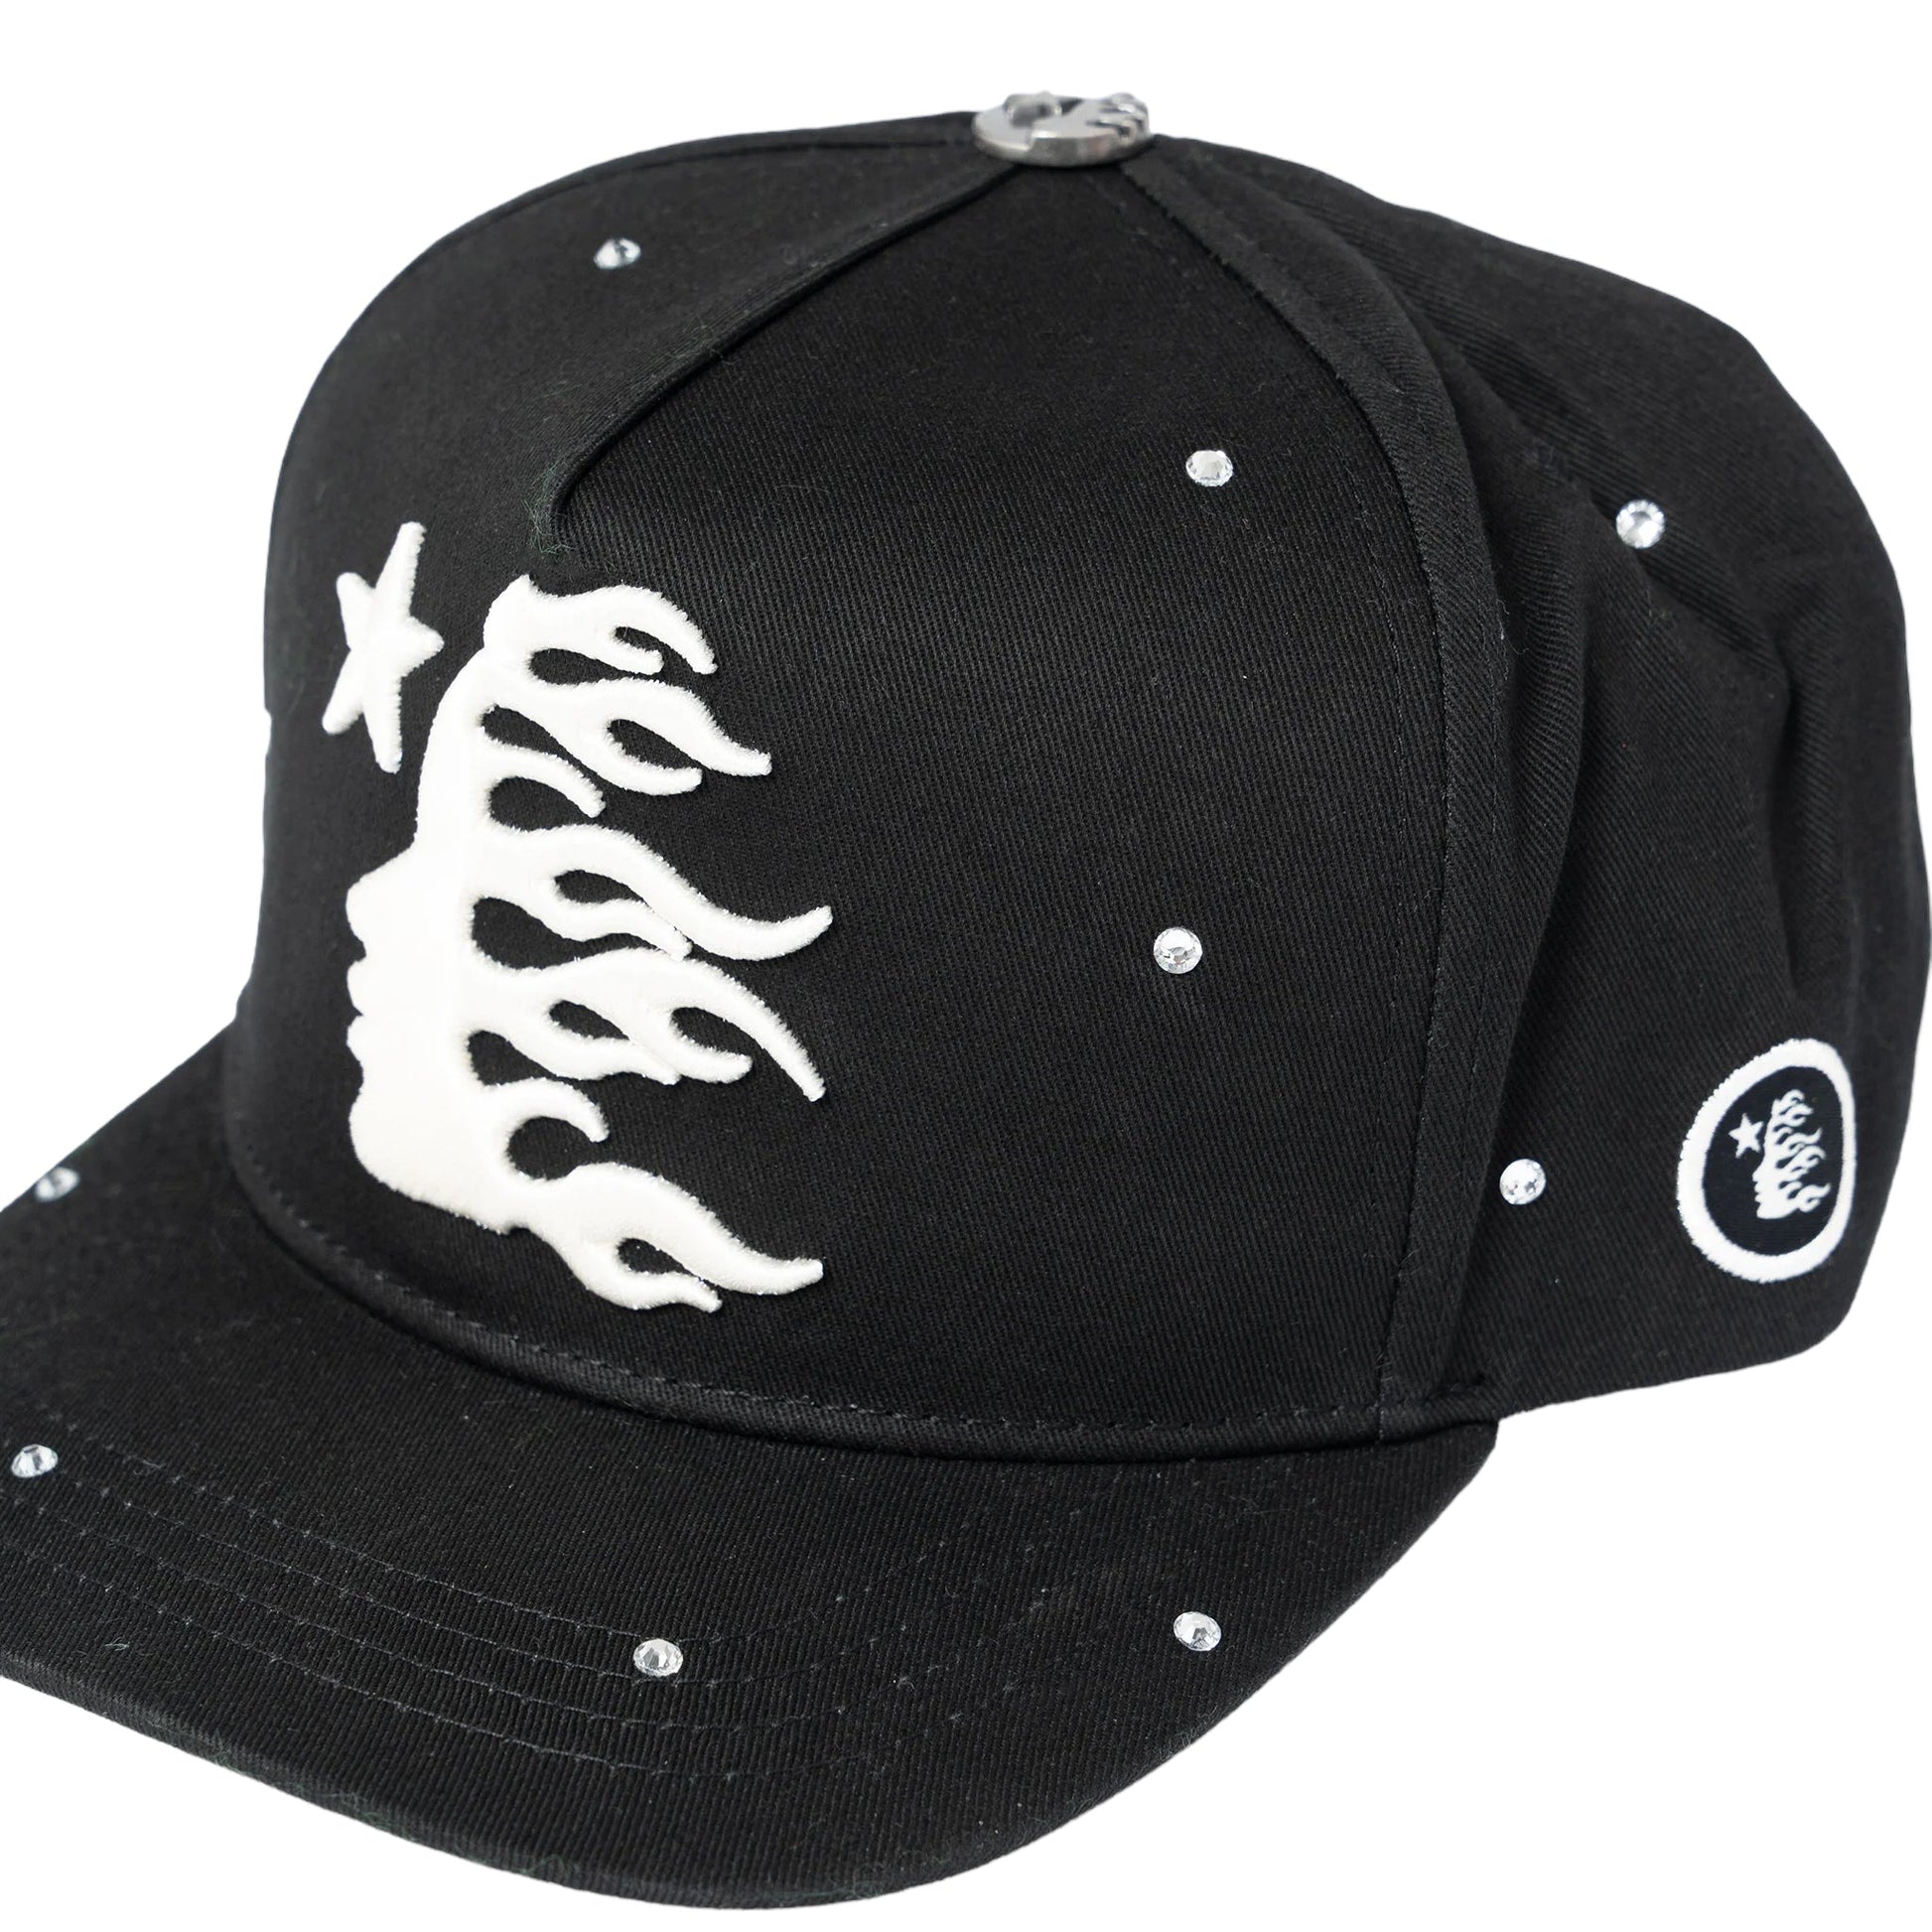 Hellstar Starry Night SnapBack Hat (Black) - Supra Sneakers